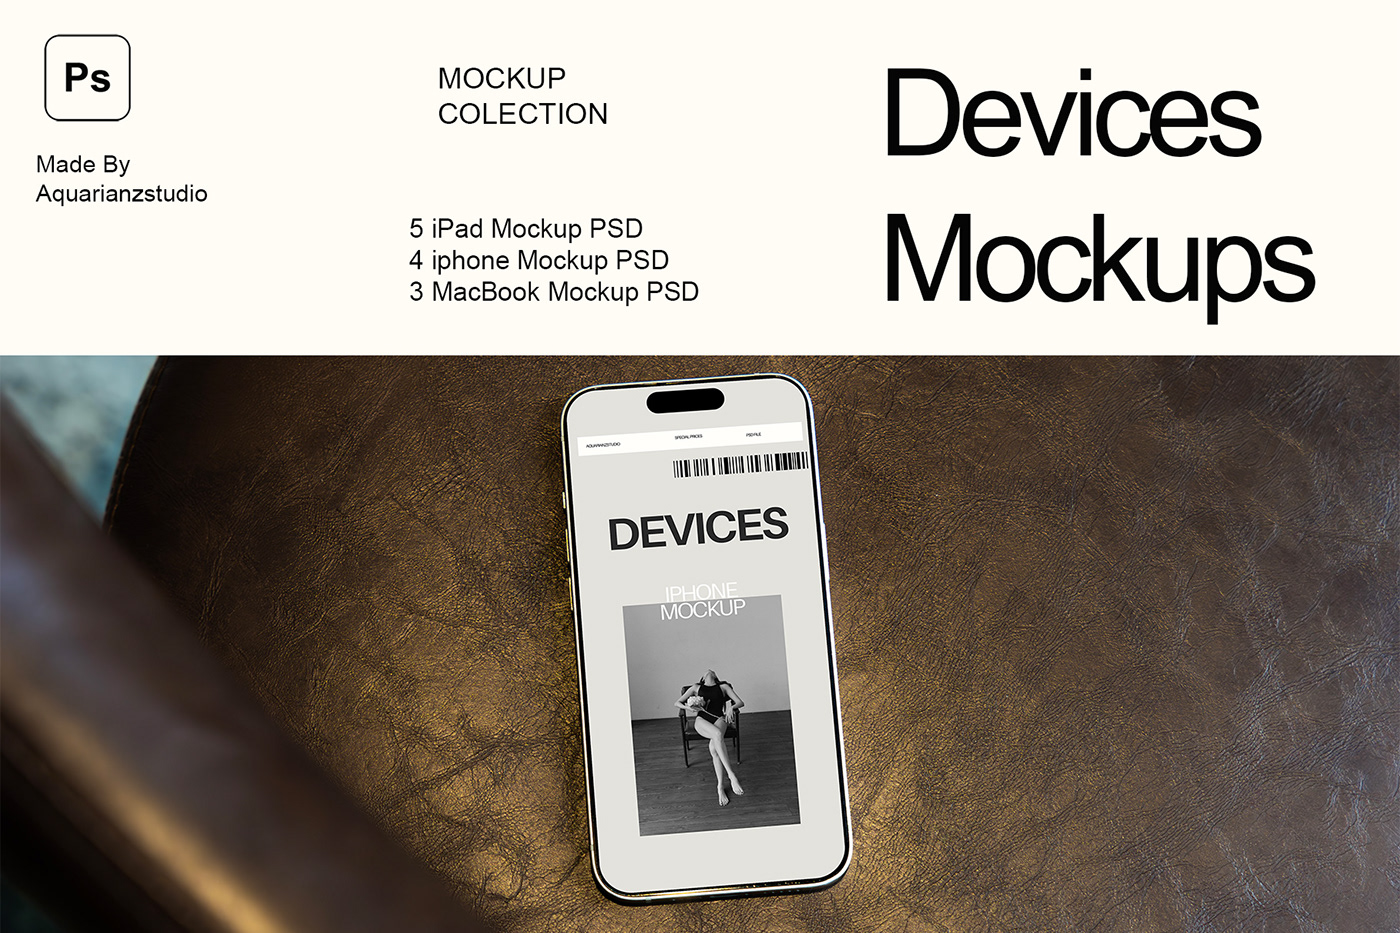 Devices Mockup Ipad Mockup iphone mockup macbook mockup realistic mockup photo mockup